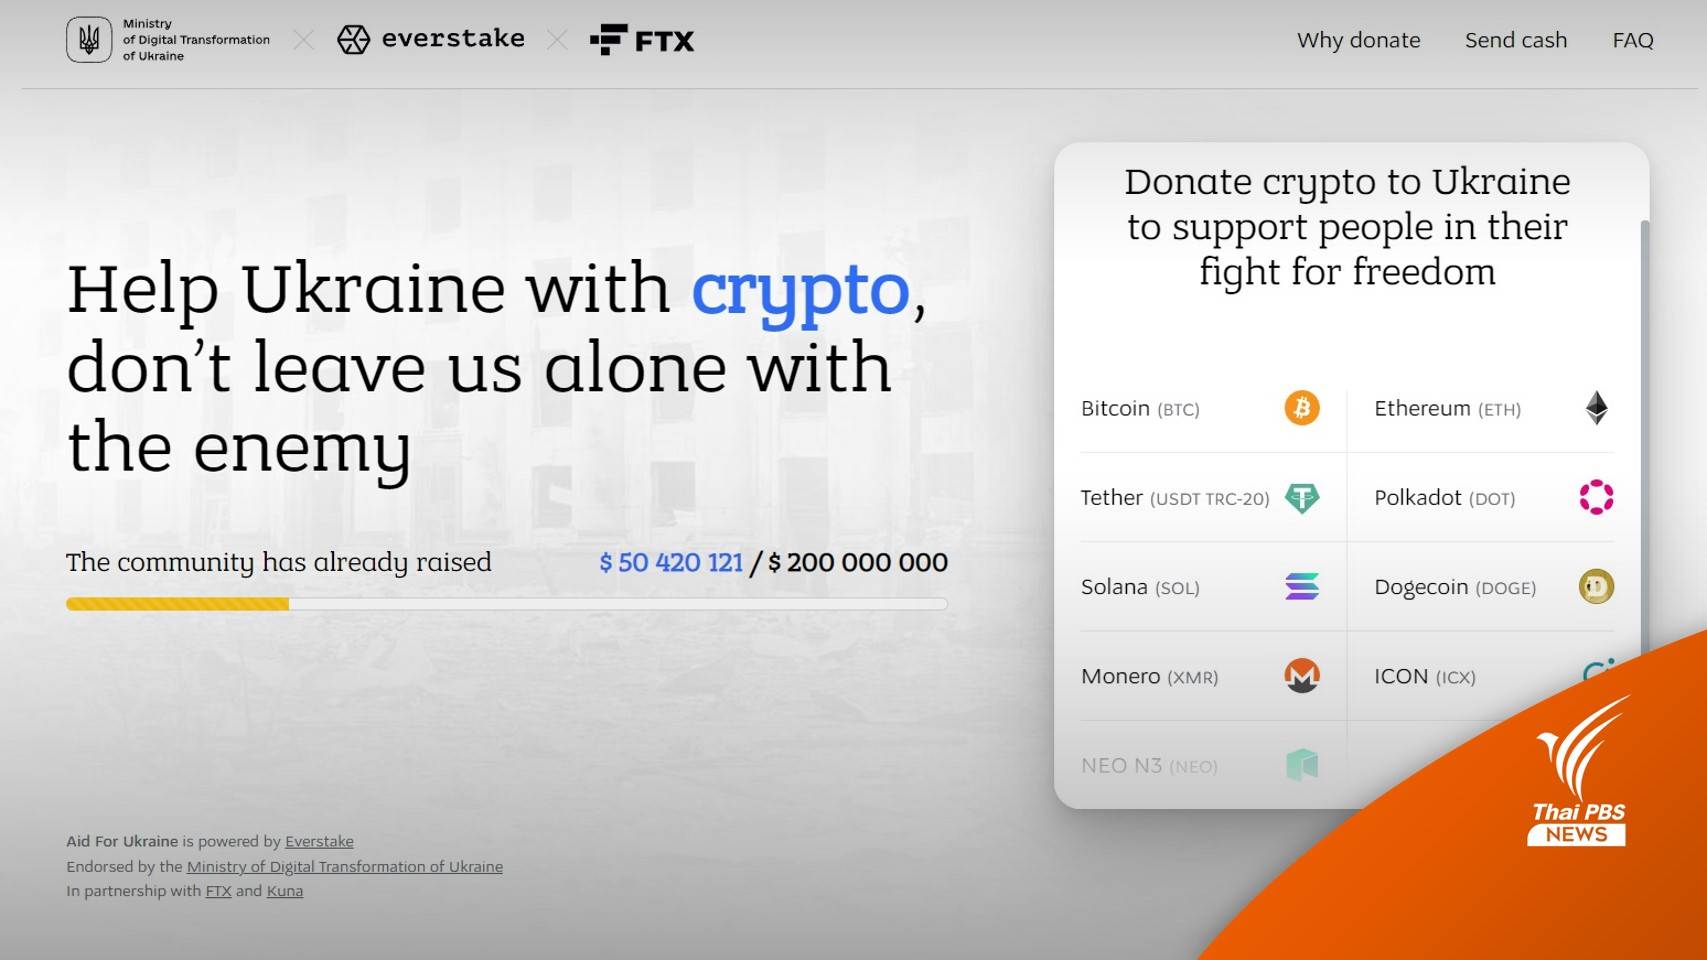 ยูเครนเปิดเว็บไซต์ "Aid For Ukraine" รับบริจาค Crypto สู้ศึกรัสเซีย